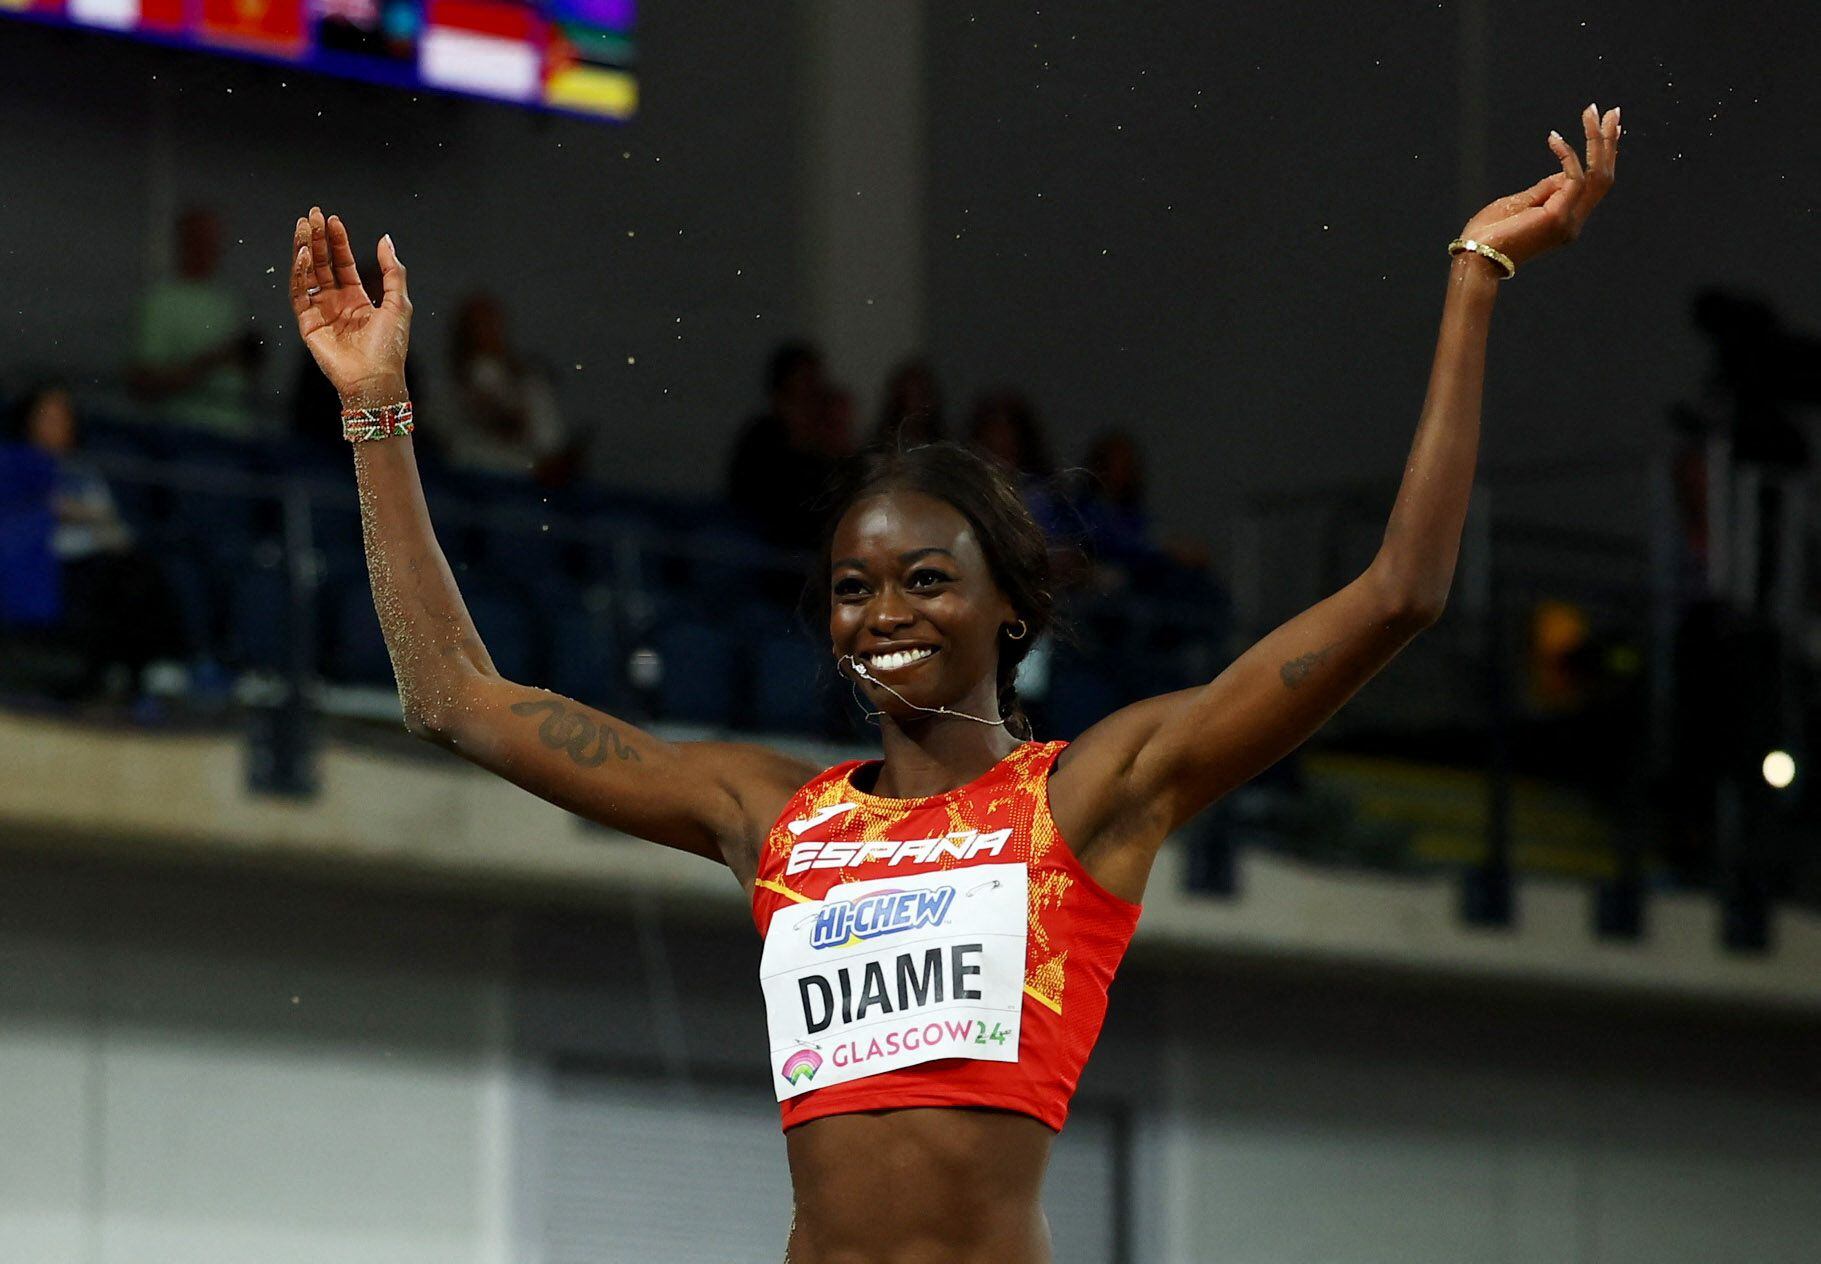 La atleta española Fátima Diame (REUTERS/Hannah Mckay)